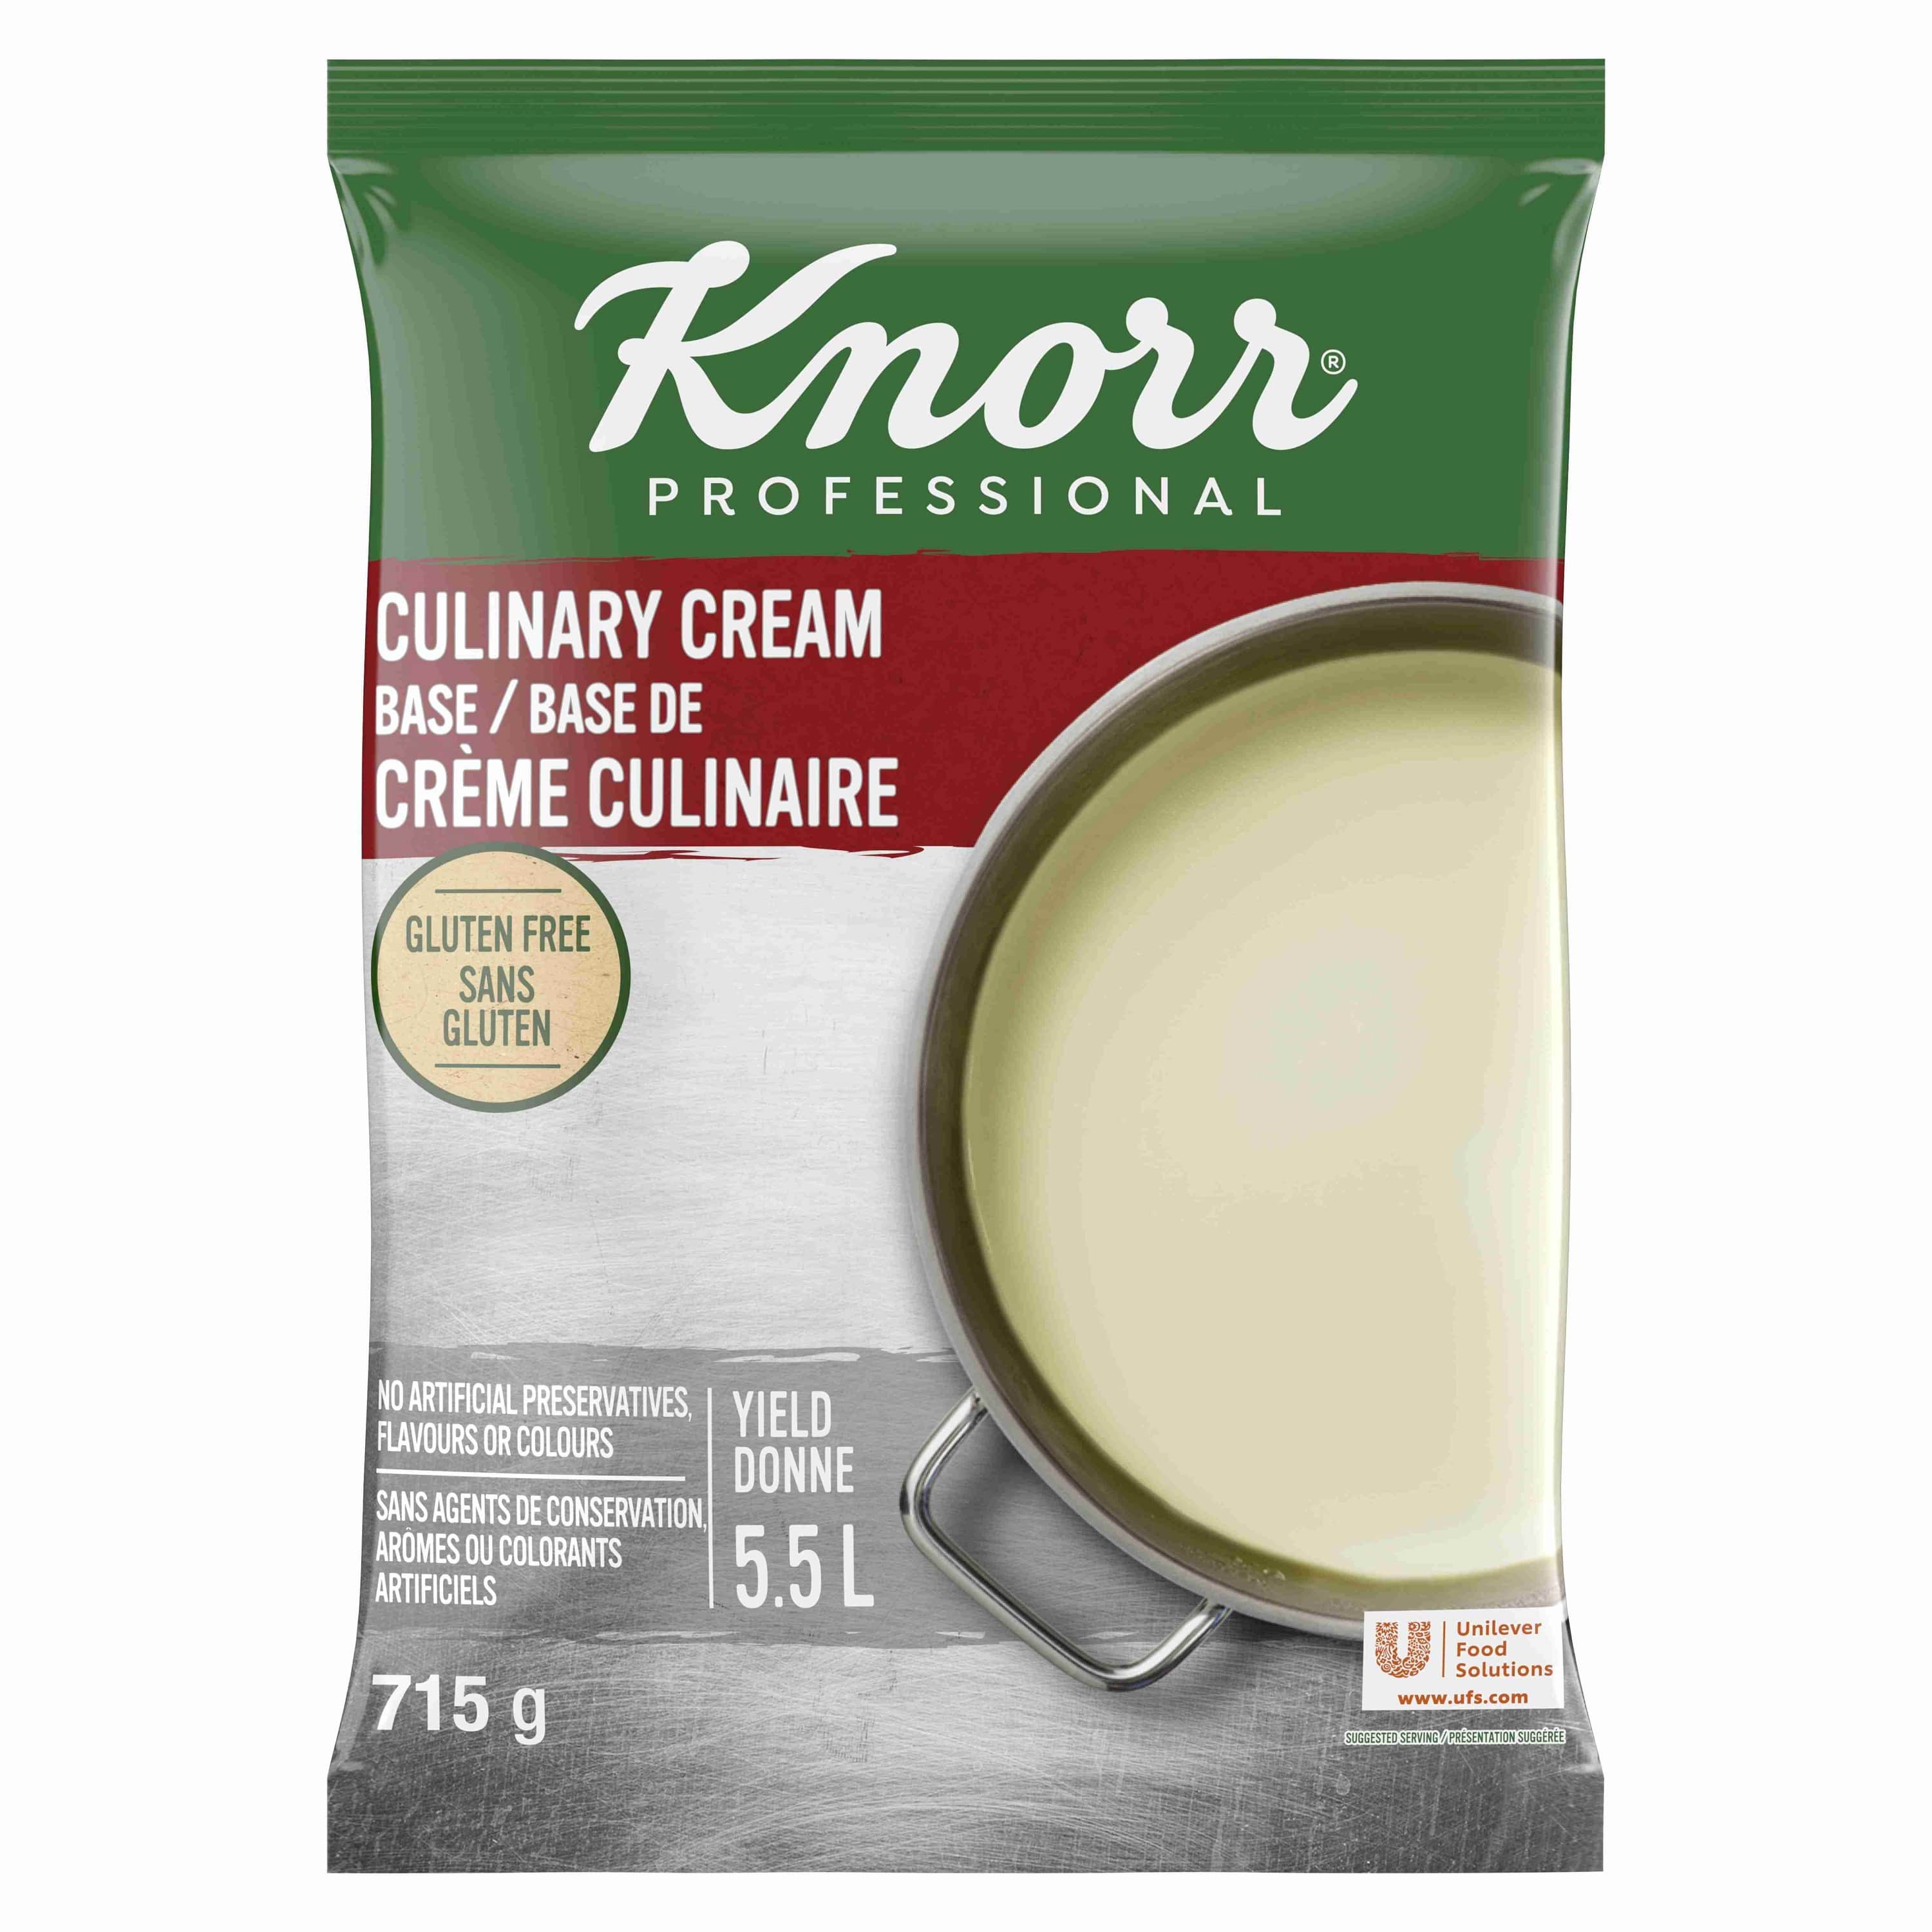 Knorr® Professionnel Base de Crème Culinaire 6 x 715 g - Knorr® Professionnel Base de Crème Culinaire 6 x 715 g est plus performante à chaud.